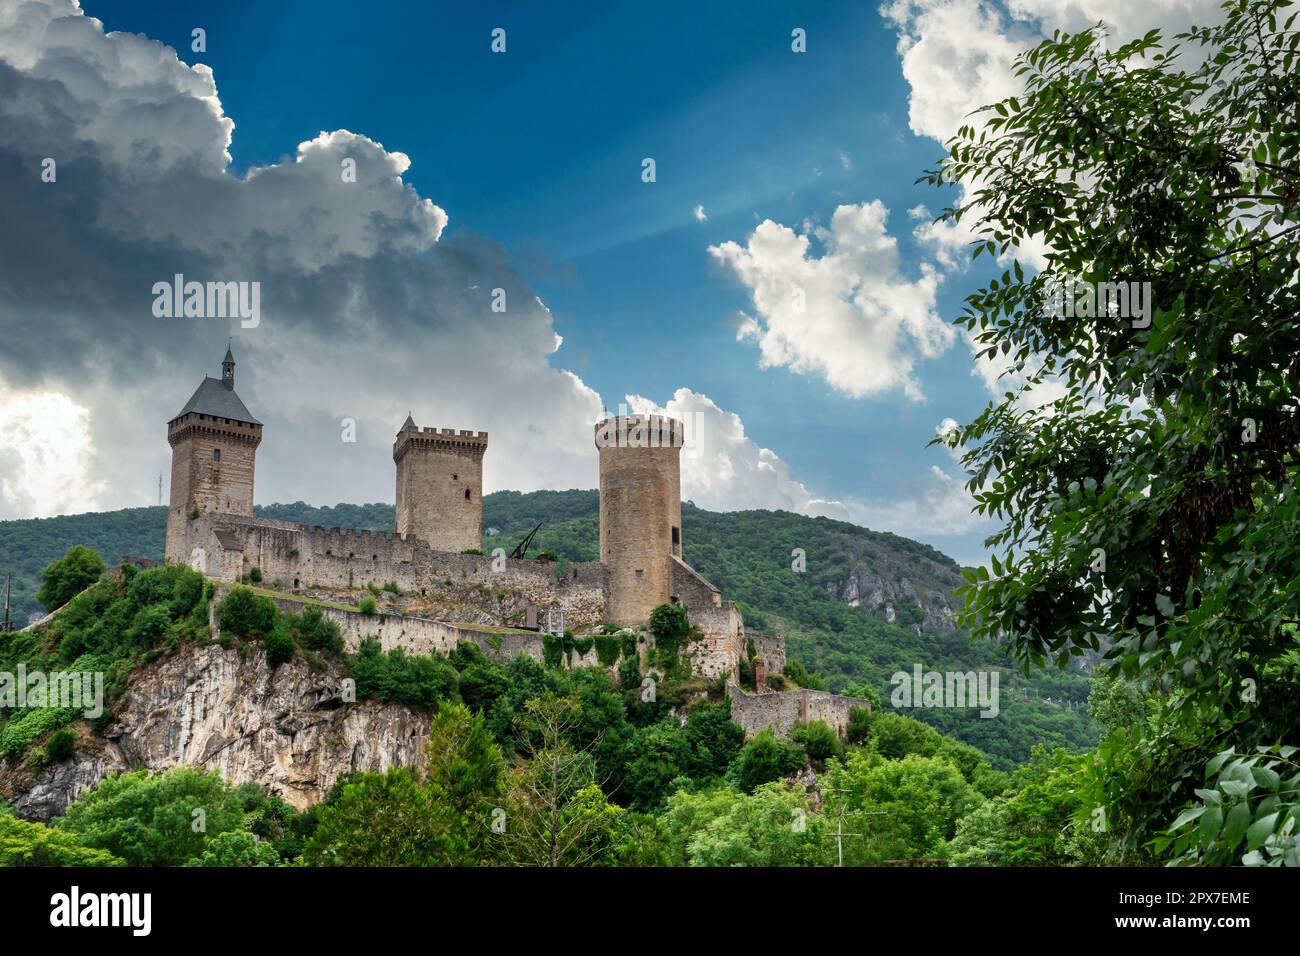 Ancien château médiéval de Foix, Ariège, sud de la France. Banque D'Images